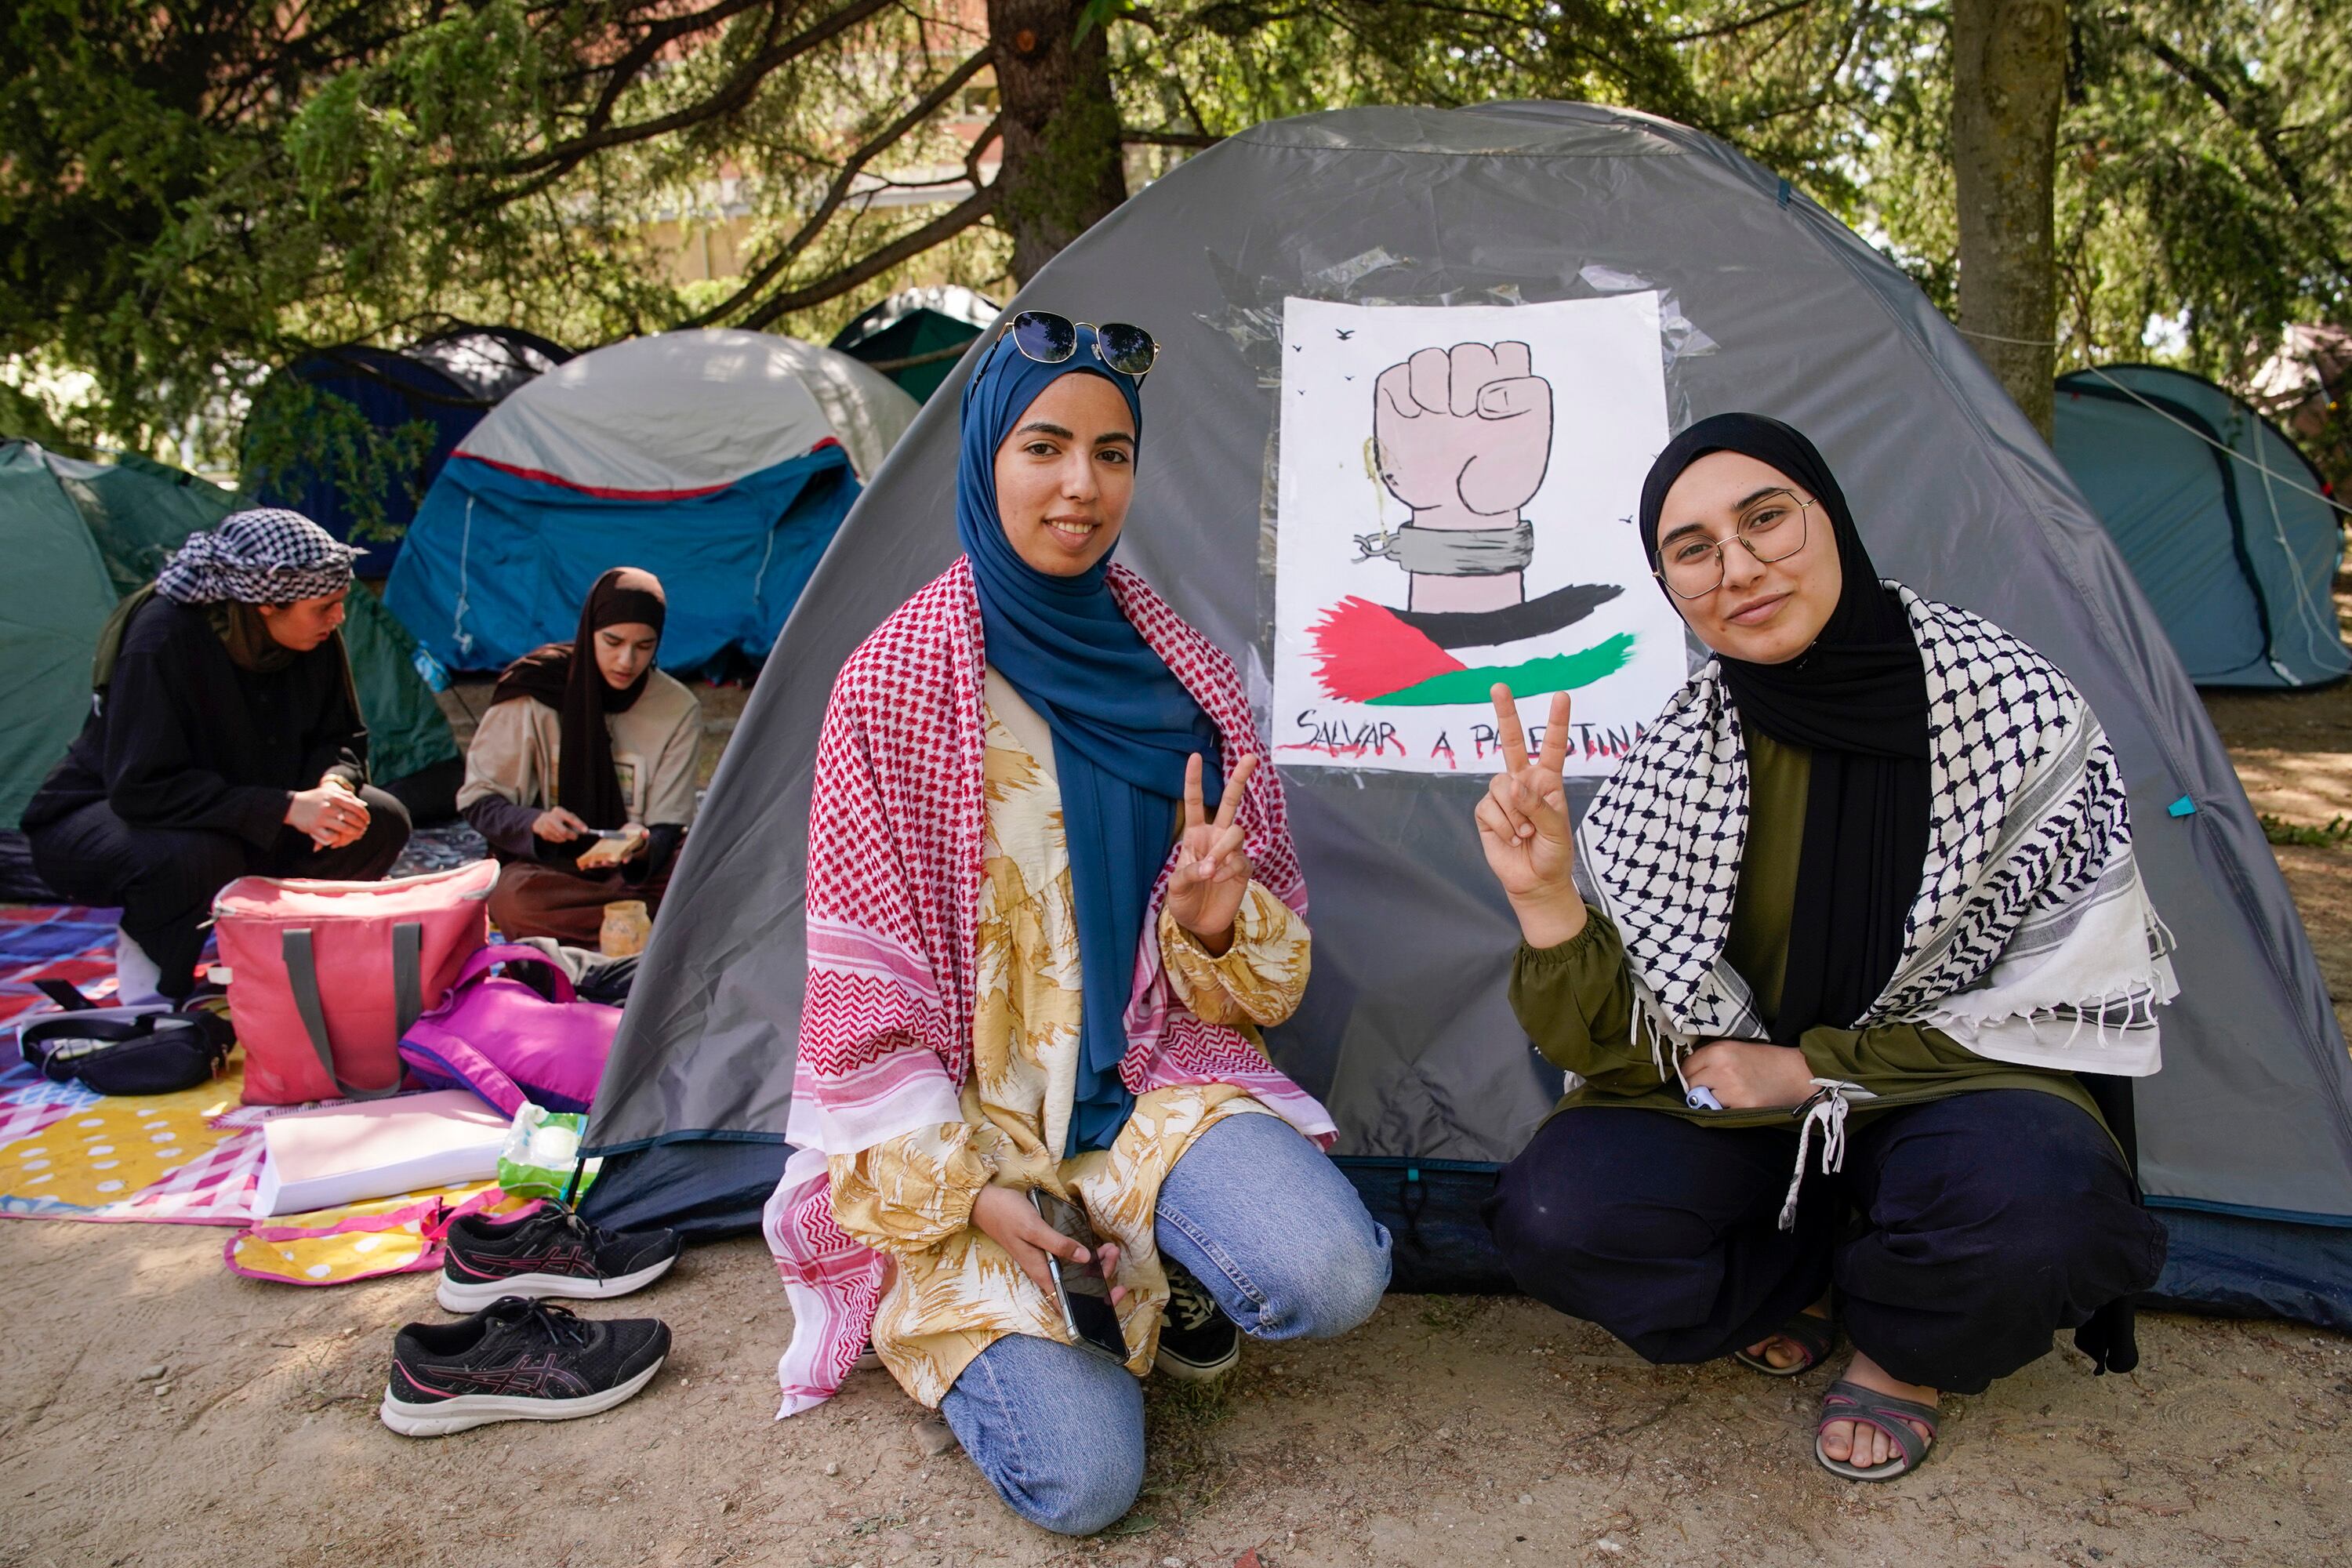 A la izquierda Khaoula Qazdar, de 24 años, y la derecha Fátima Chellaf, de 20 años, el pasado sábado en la acampada de Ciudad Universitaria de Madrid.